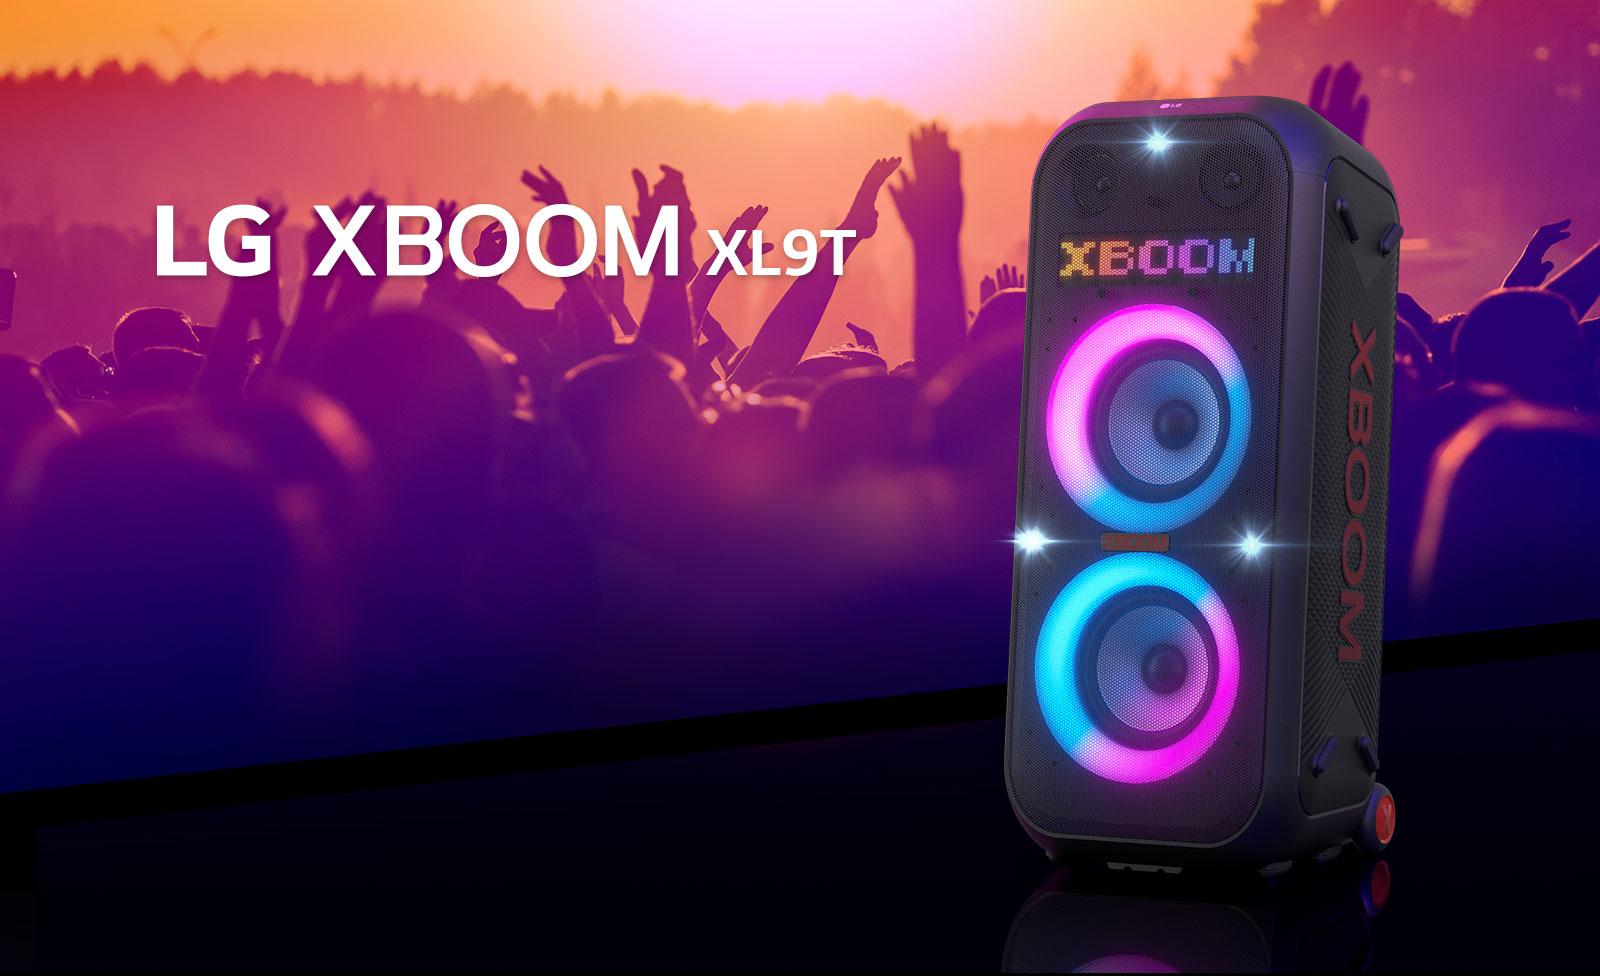 LG XBOOM XL9T je postavljen na površini i prikazan dijagonalno. Uključena je raznobojna rasveta, a na ekranu piše „XBOOM”. Iza zvučnika je silueta ljudi koji uživaju na žurci.